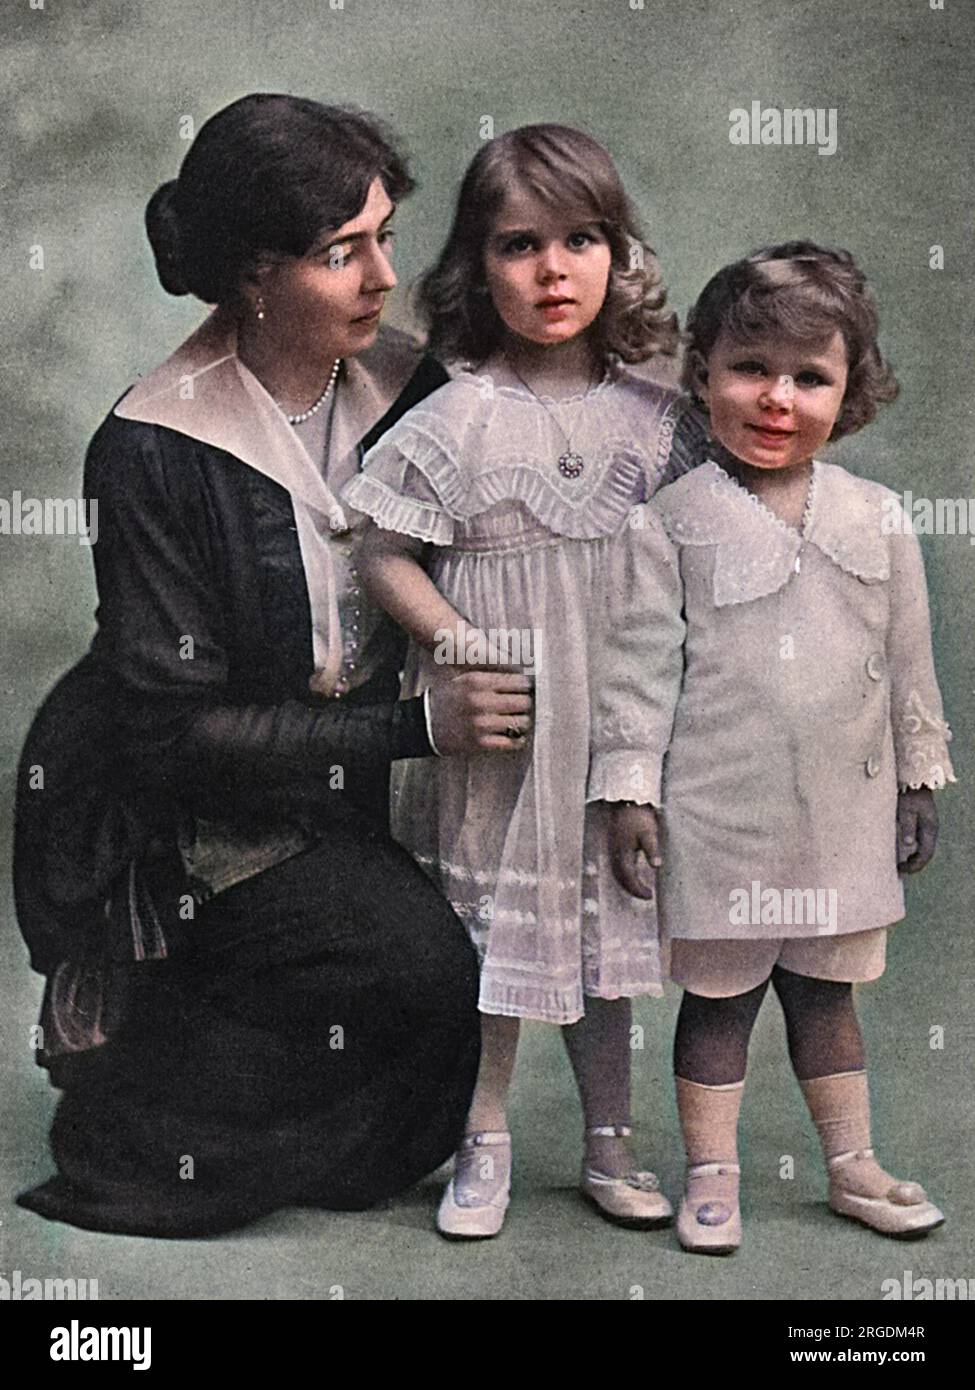 La princesse héritière de Suède, anciennement princesse Marguerite de Connaught (1882-1920), grand-rieur de la reine Victoria, a posé avec ses deux plus jeunes enfants, la princesse Ingrid et le prince Bertil, duc de Halland. Ingrid épousera plus tard le prince héritier Frederik de Danemark. La princesse héritière de Suède, connue sous le nom de Daisy par la famille, est décédée subitement en 1920 alors que ses enfants étaient encore jeunes. Banque D'Images